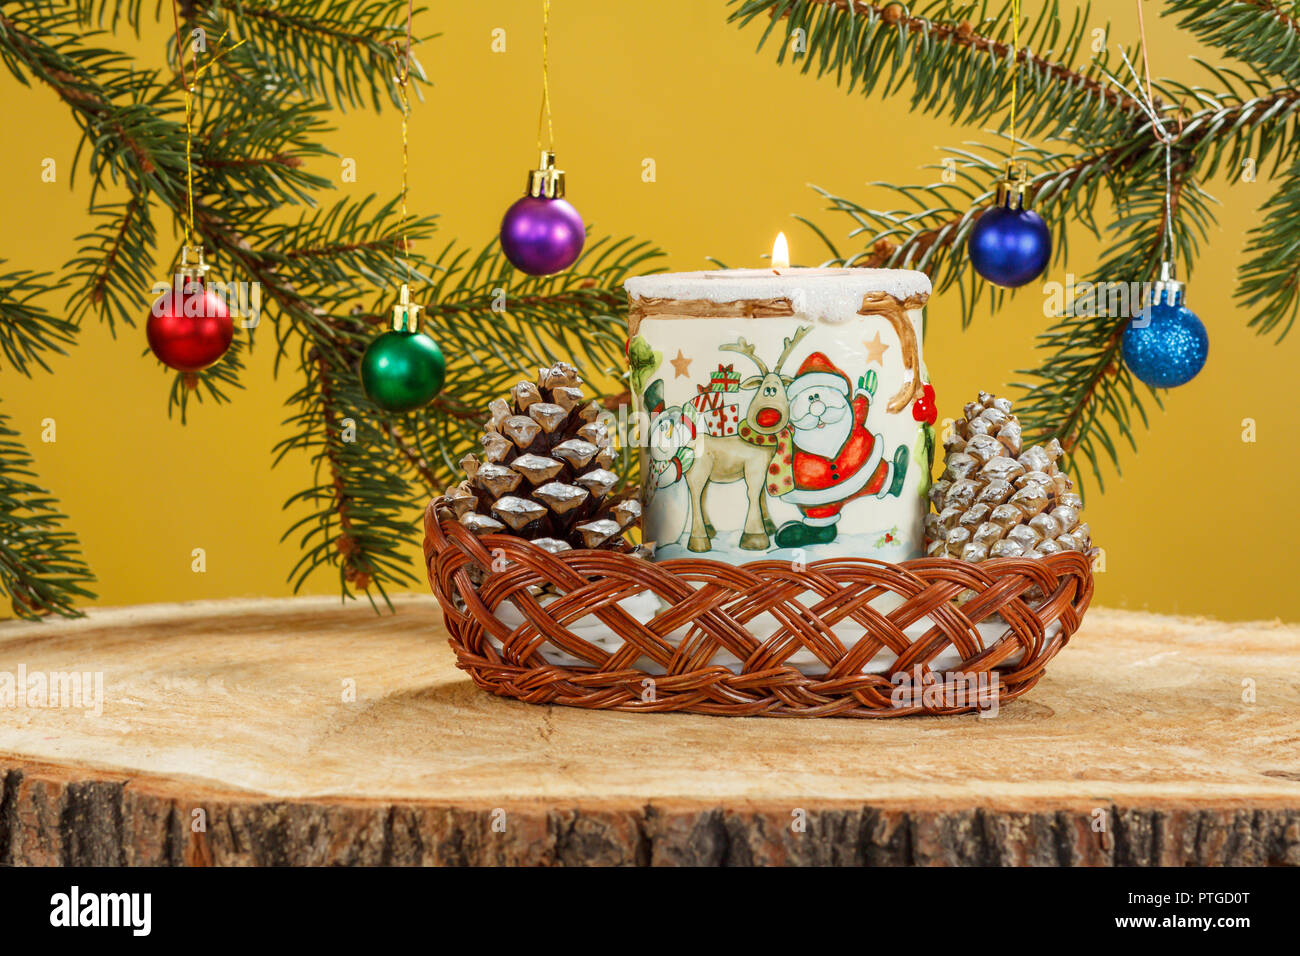 Brennende Kerze, Kegel in Weidenkorb und natürlichen Zweige Tannenbaum mit Kugeln auf Holz- Oberfläche von Pine stumpf. Weihnachten und Neujahr Konzept Stockfoto